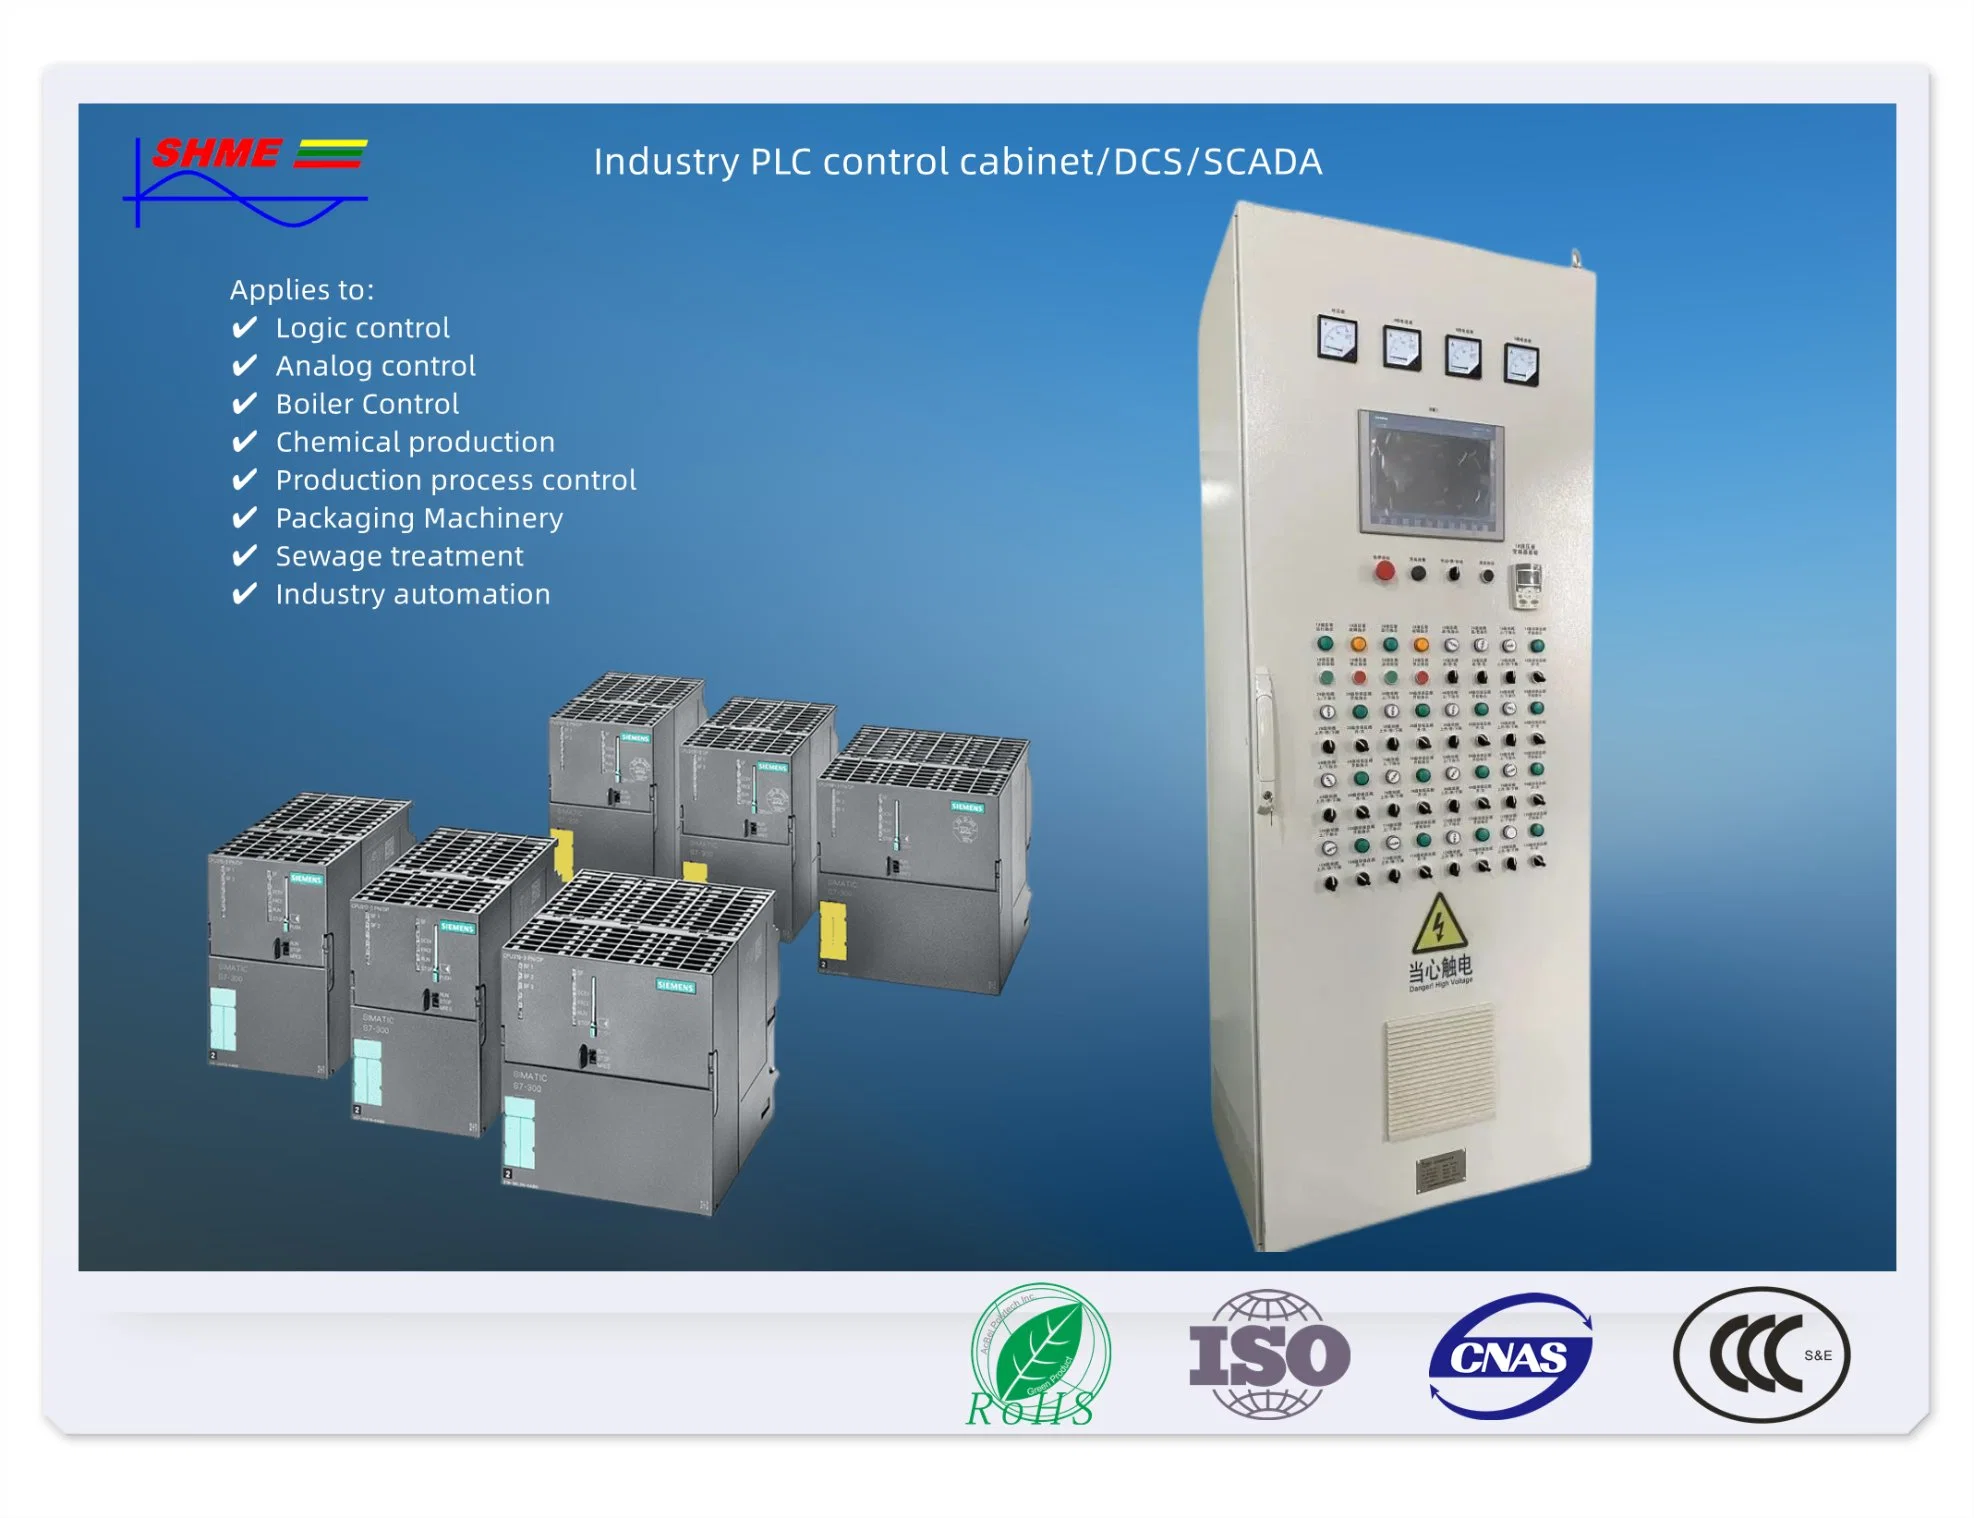 Sistema de controlo DCS, sistema SCADA, sistema de controlo PLC tratamento de água, central eléctrica, máquina de pacotes